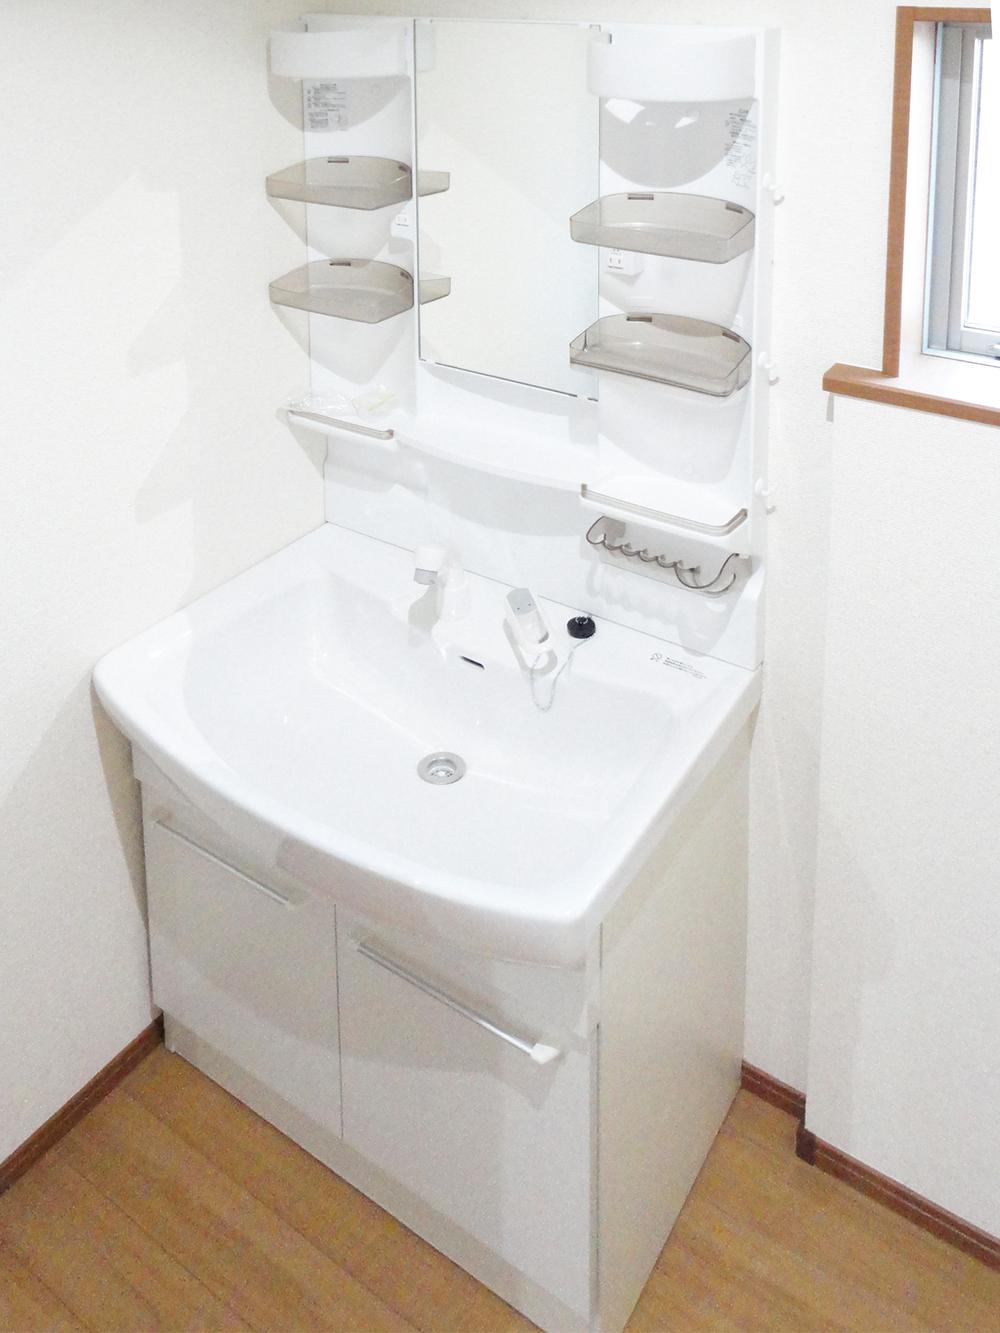 Wash basin, toilet. Washbasin a shower.